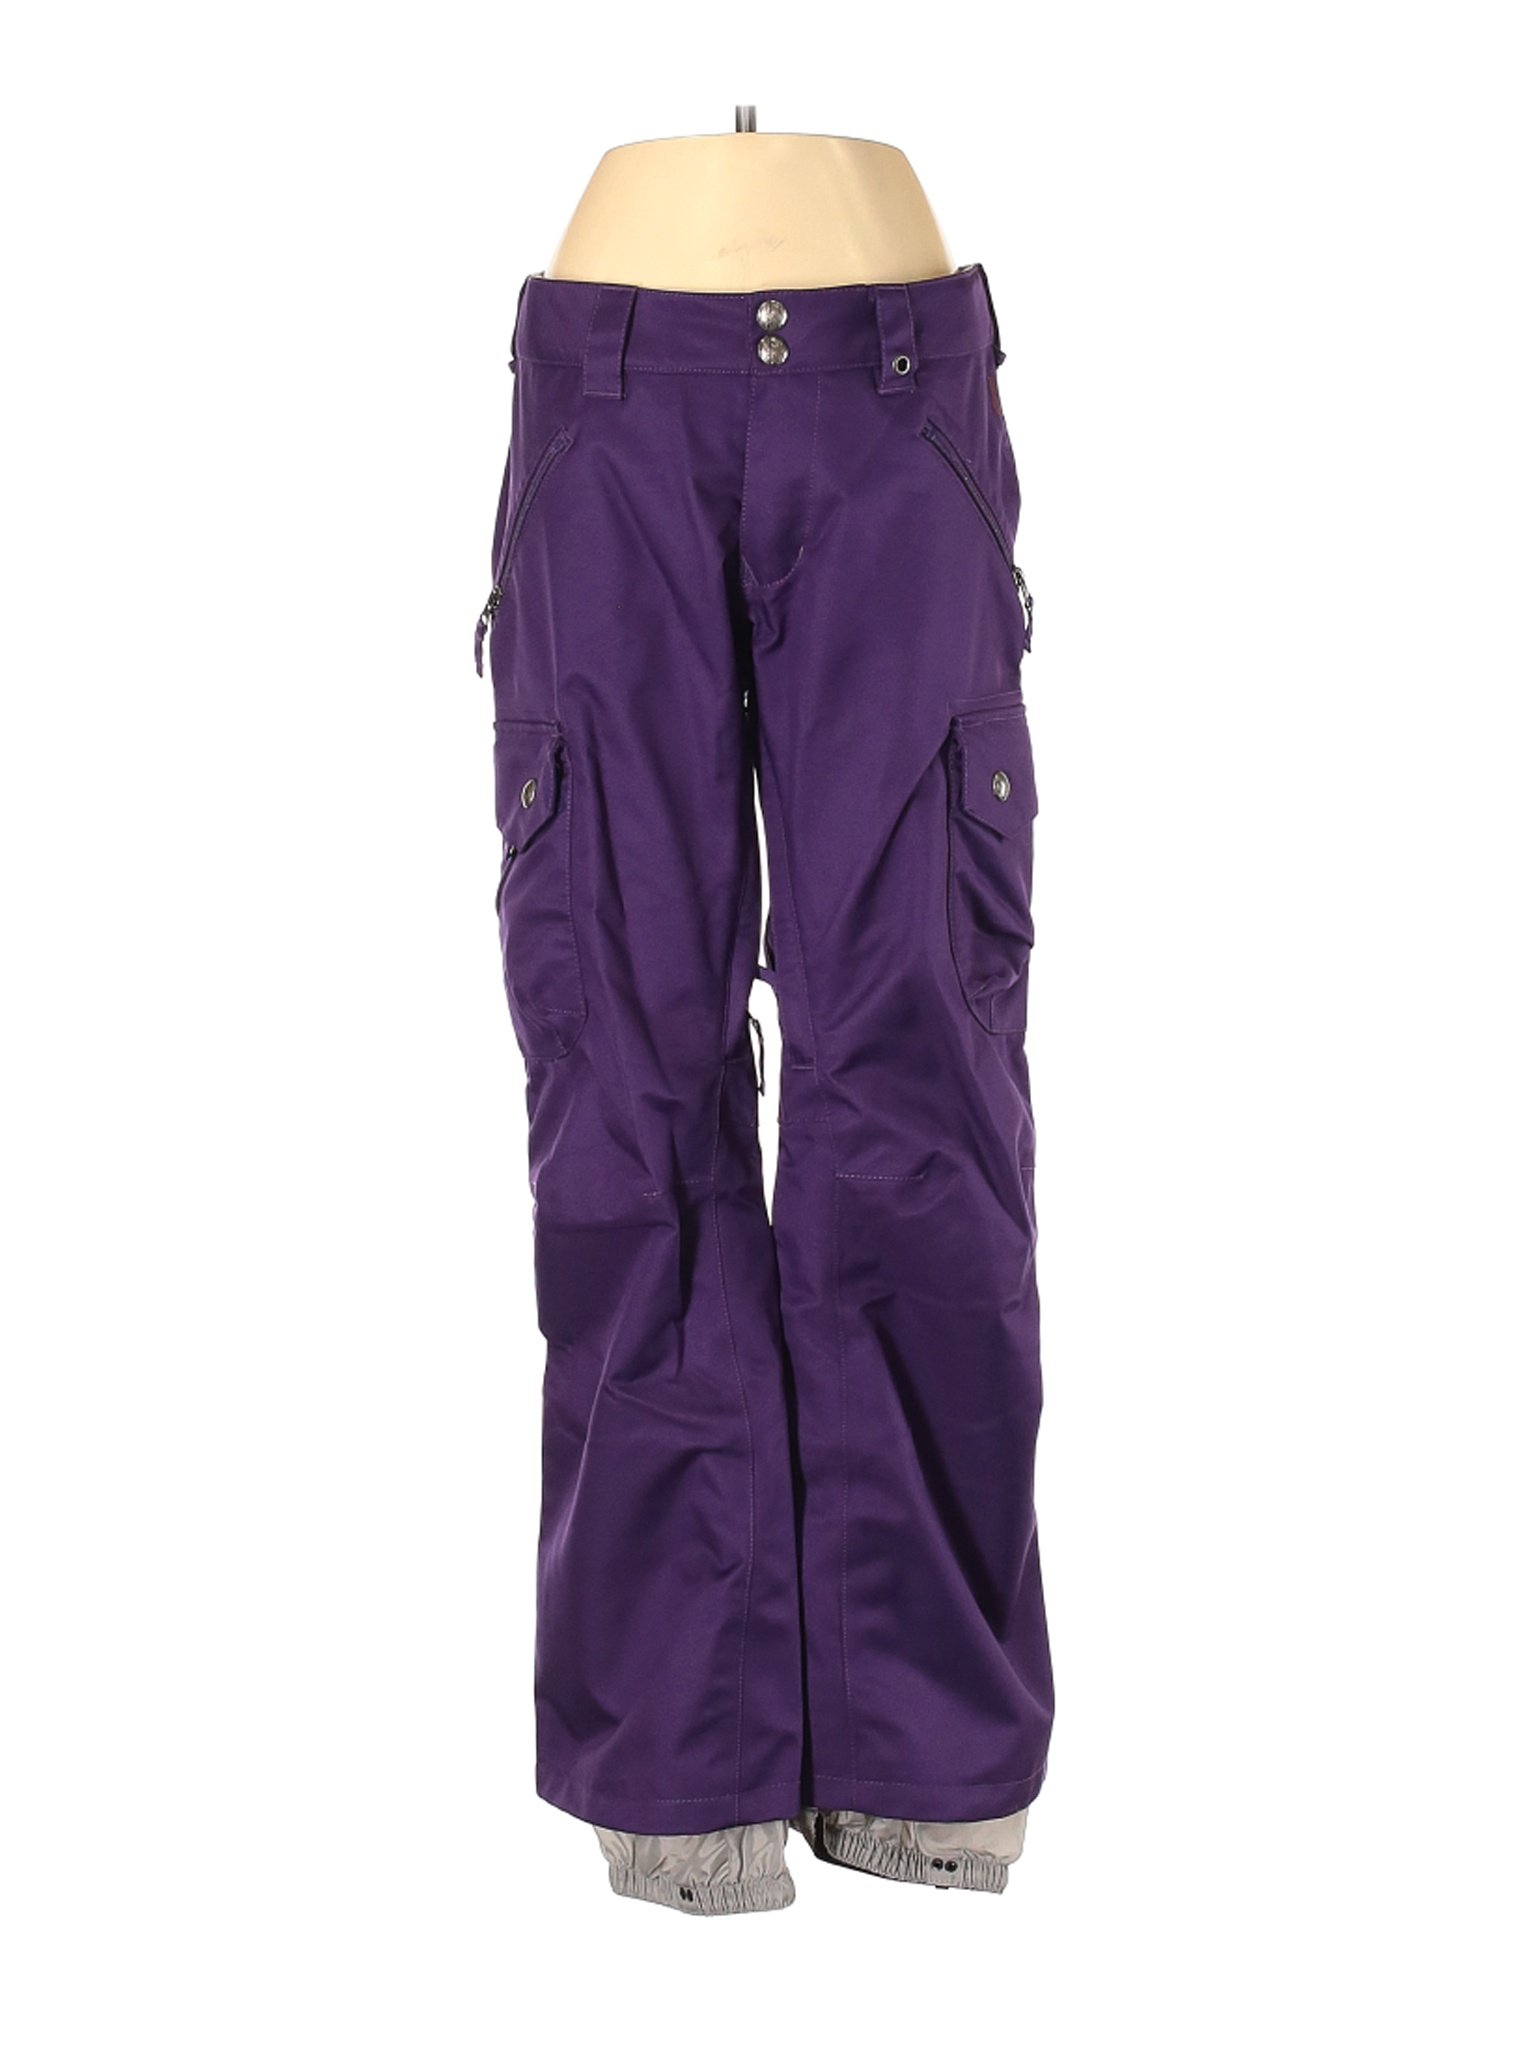 Burton Women Purple Snow Pants XXS | eBay